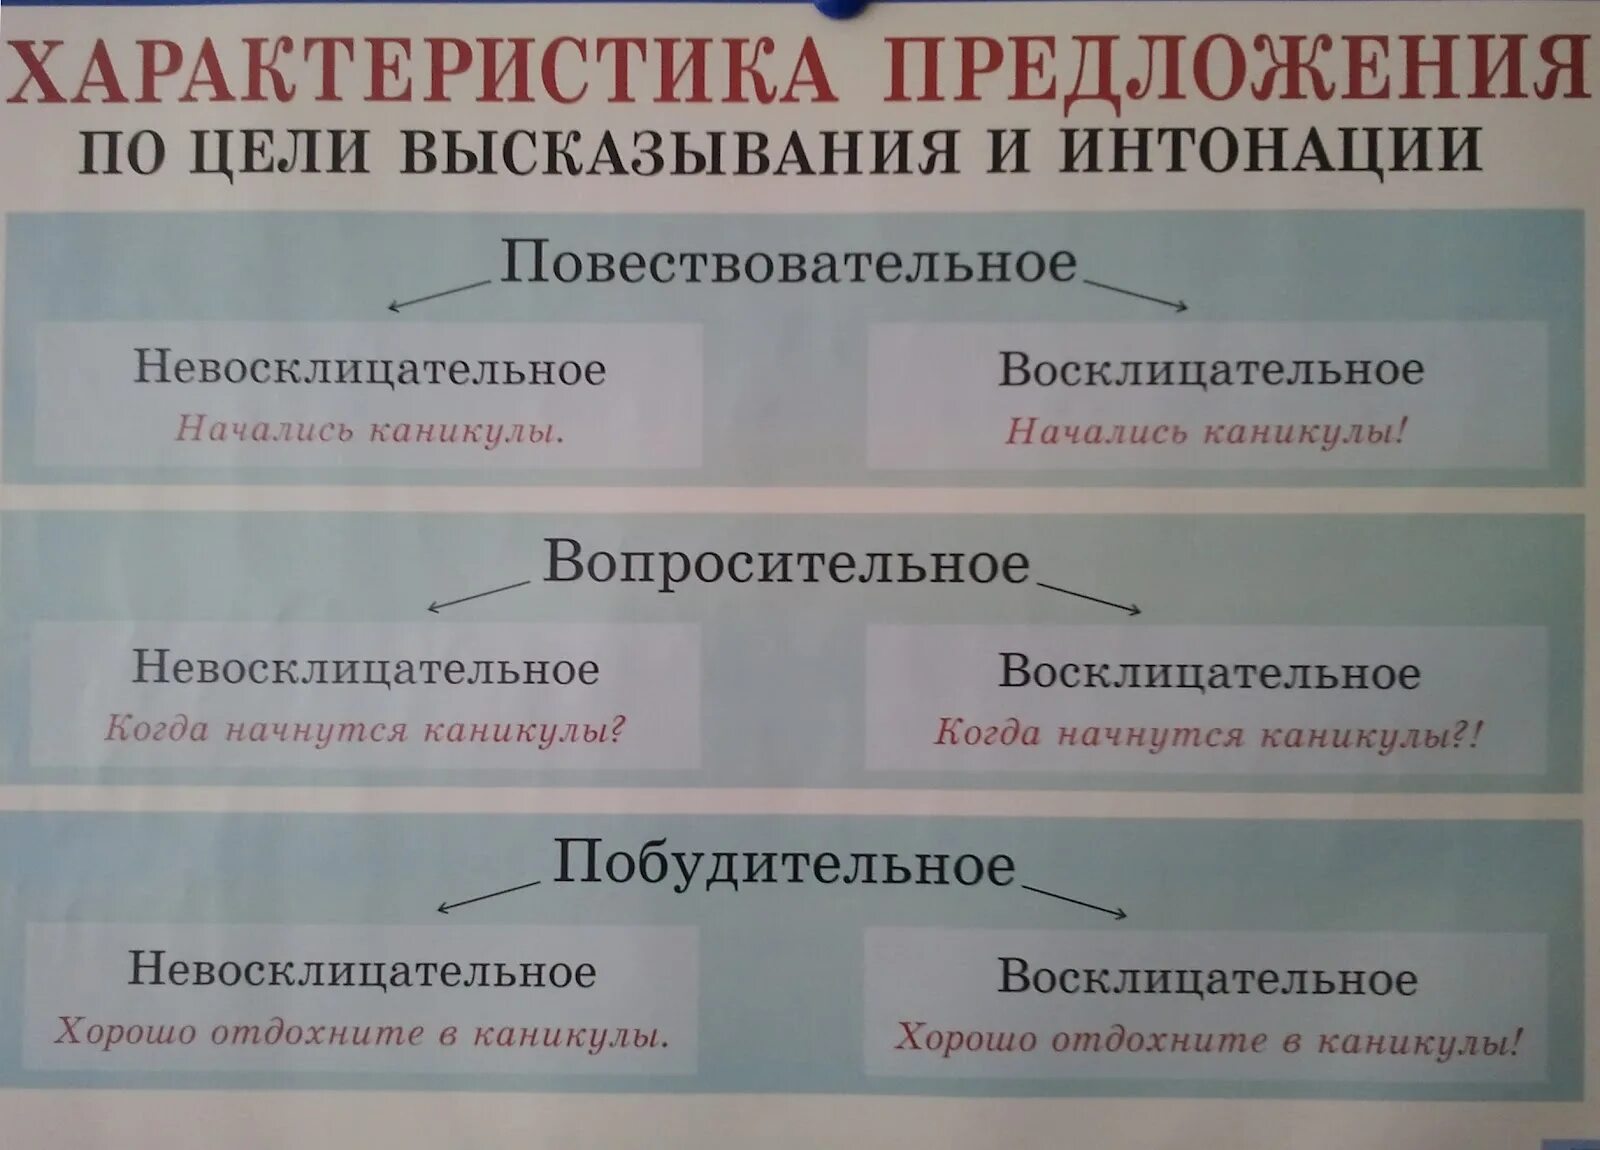 Какие типы предложений бывают в русском языке. Характеристика предложения по цели. Характеристика предложения по цели высказывания. Таблица предложения по цели высказывания. Хврактеристик апредложения.